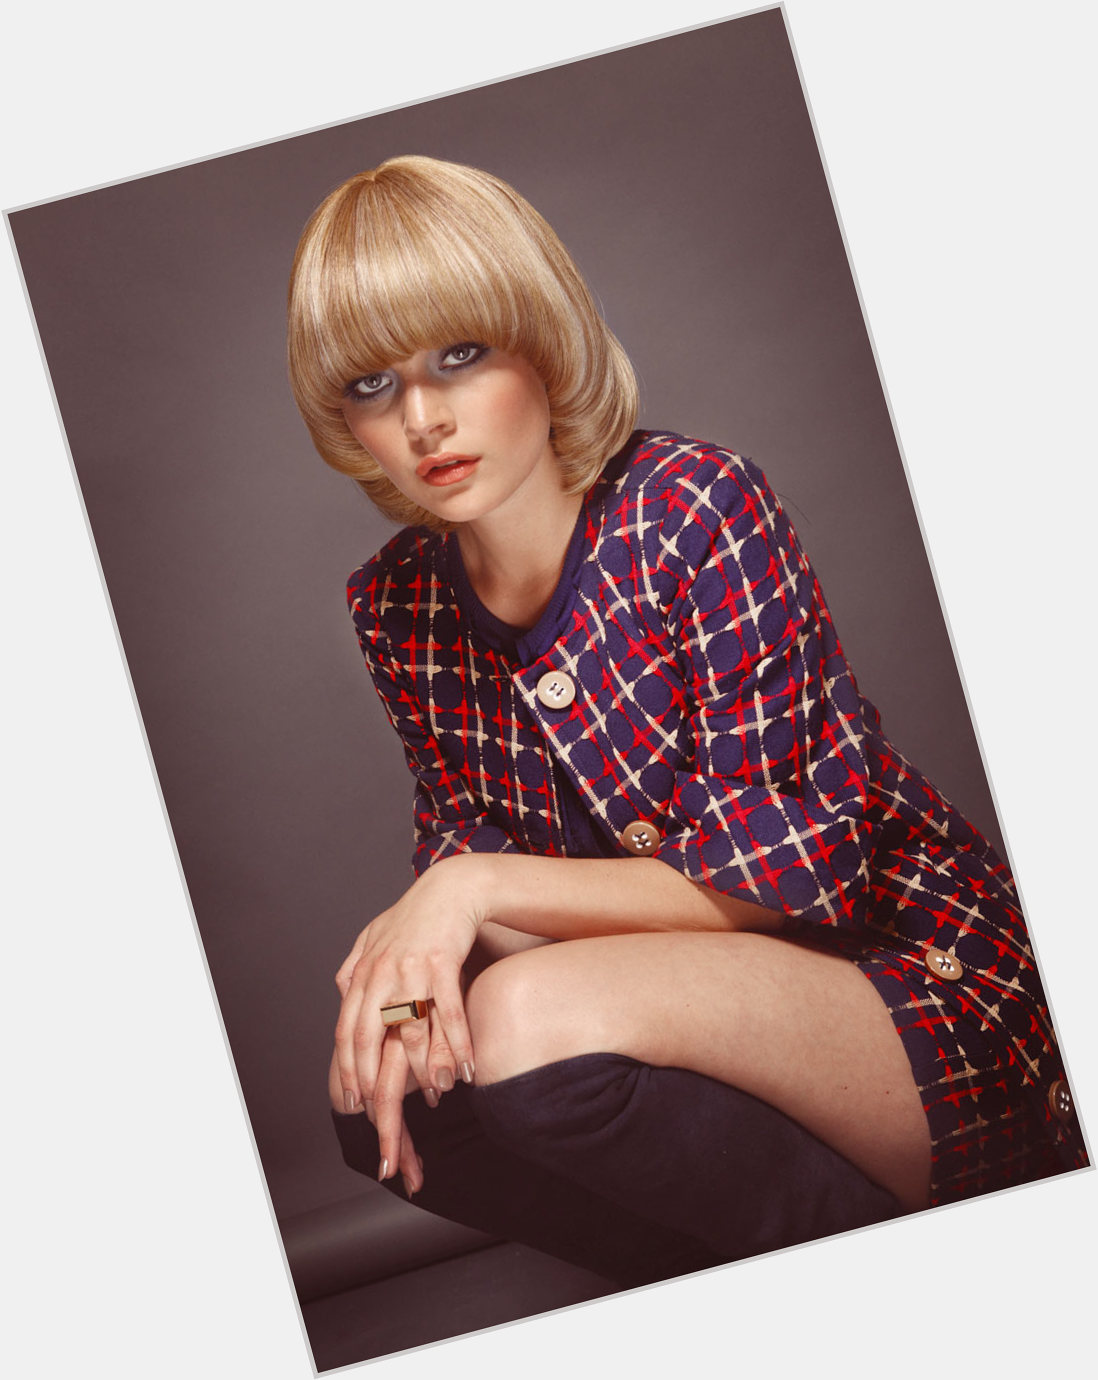 Alice Kastrup Moller Slim body,  blonde hair & hairstyles